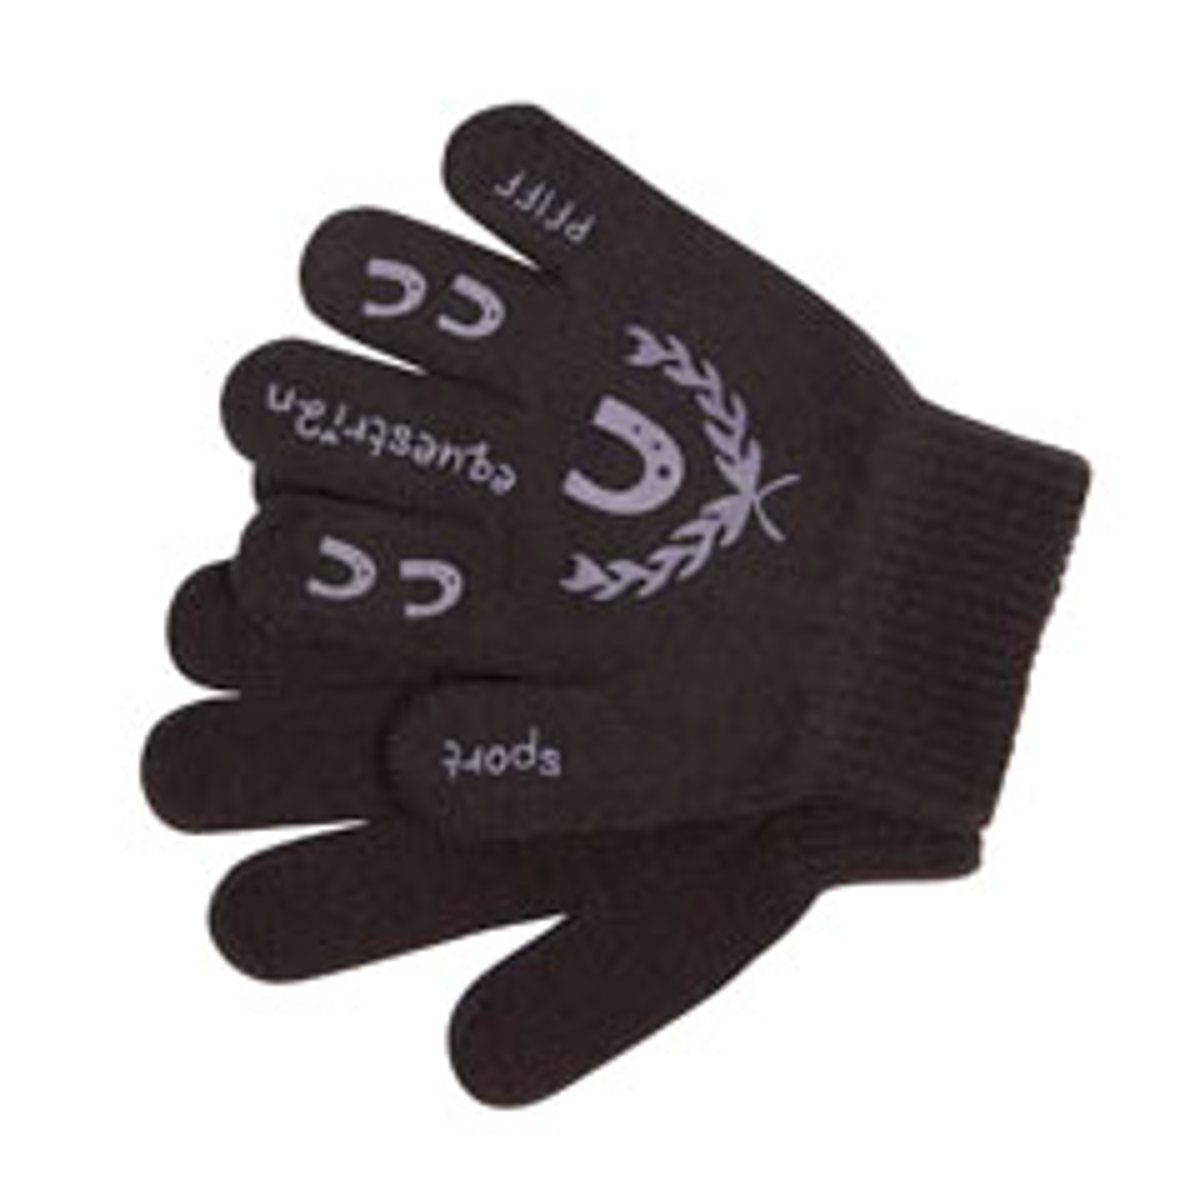 Sport Sporthandschuhe PFIFF Reithandschuhe Handschuh für Kinder mit Print - schwarz/flieder